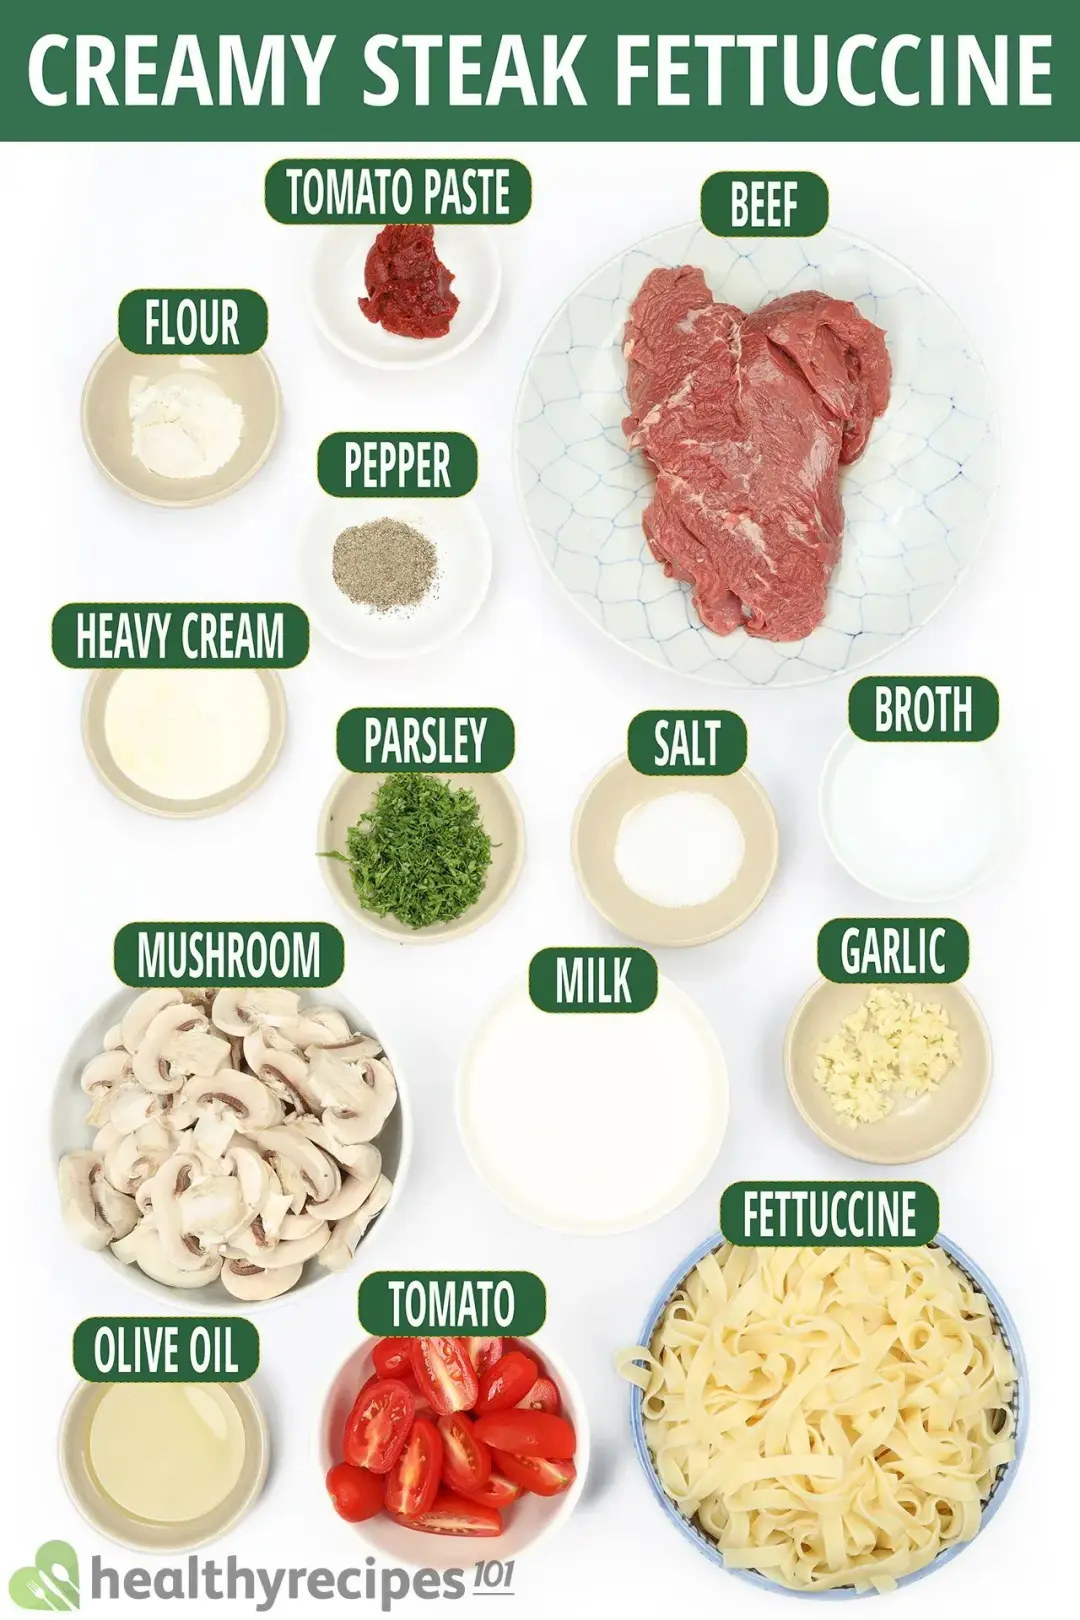 Ingredients for Creamy Steak Fettuccine